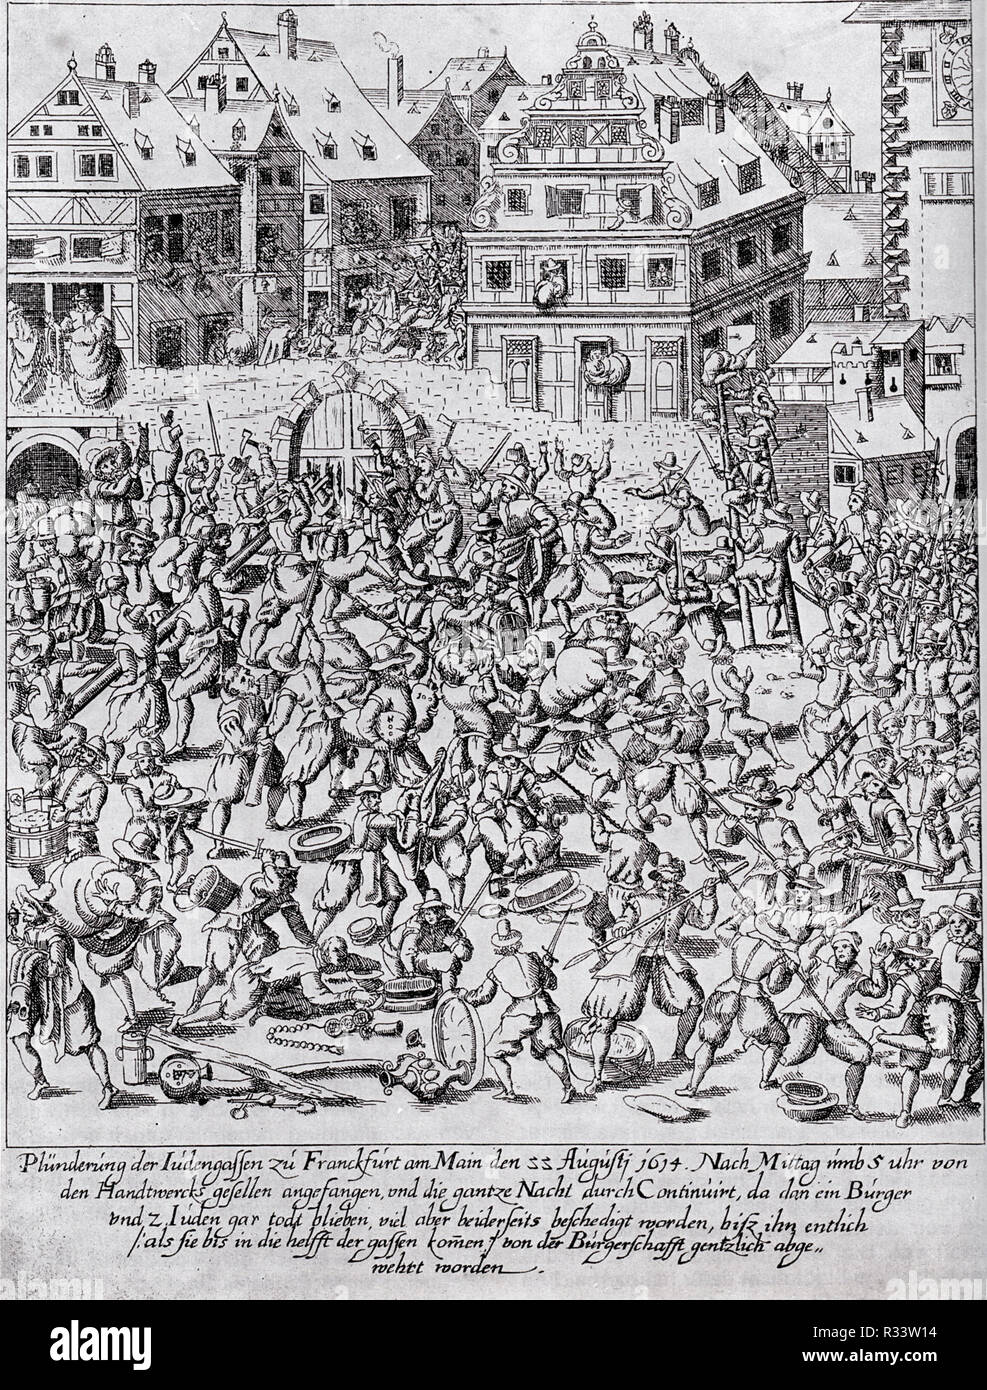 Fettmilch Aufstand: Die Plünderung der Judengasse (Judentum) in Frankfurt am Main am 22. August 1614 Stockfoto